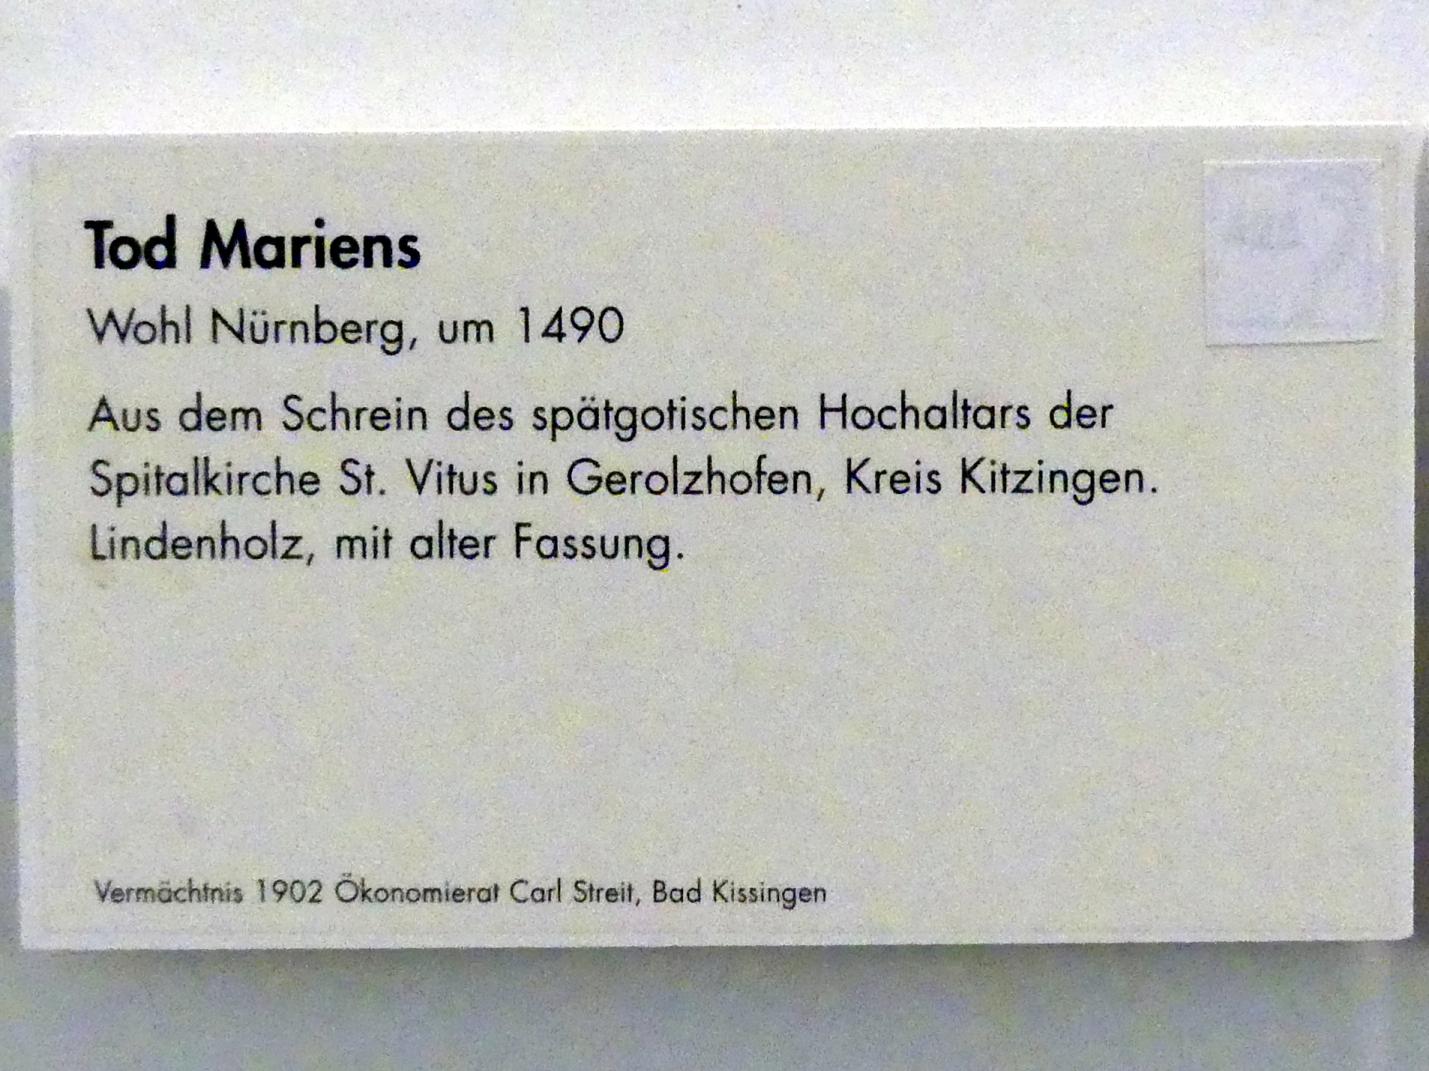 Tod Mariens, Gerolzhofen, Spitalkirche St. Vitus, jetzt Würzburg, Museum für Franken (ehem. Mainfränkisches Museum), Echterbastei, um 1490, Bild 3/3